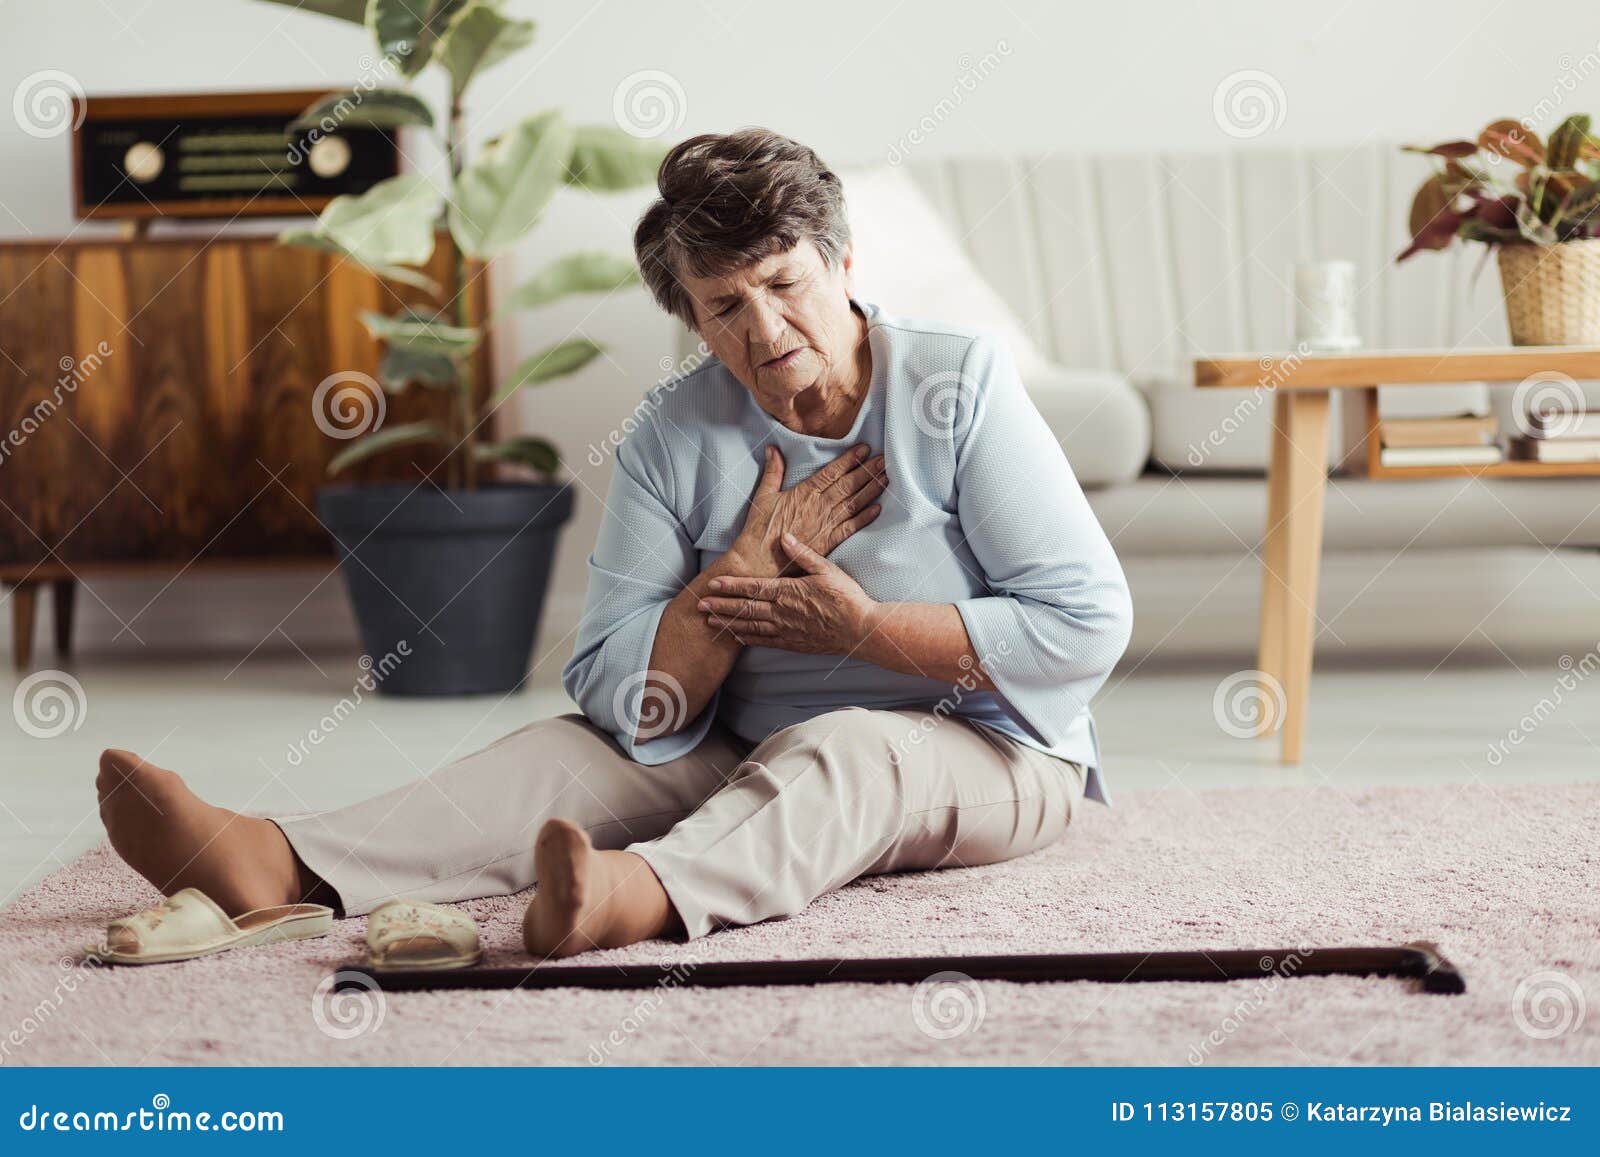 elderly woman having heart attack